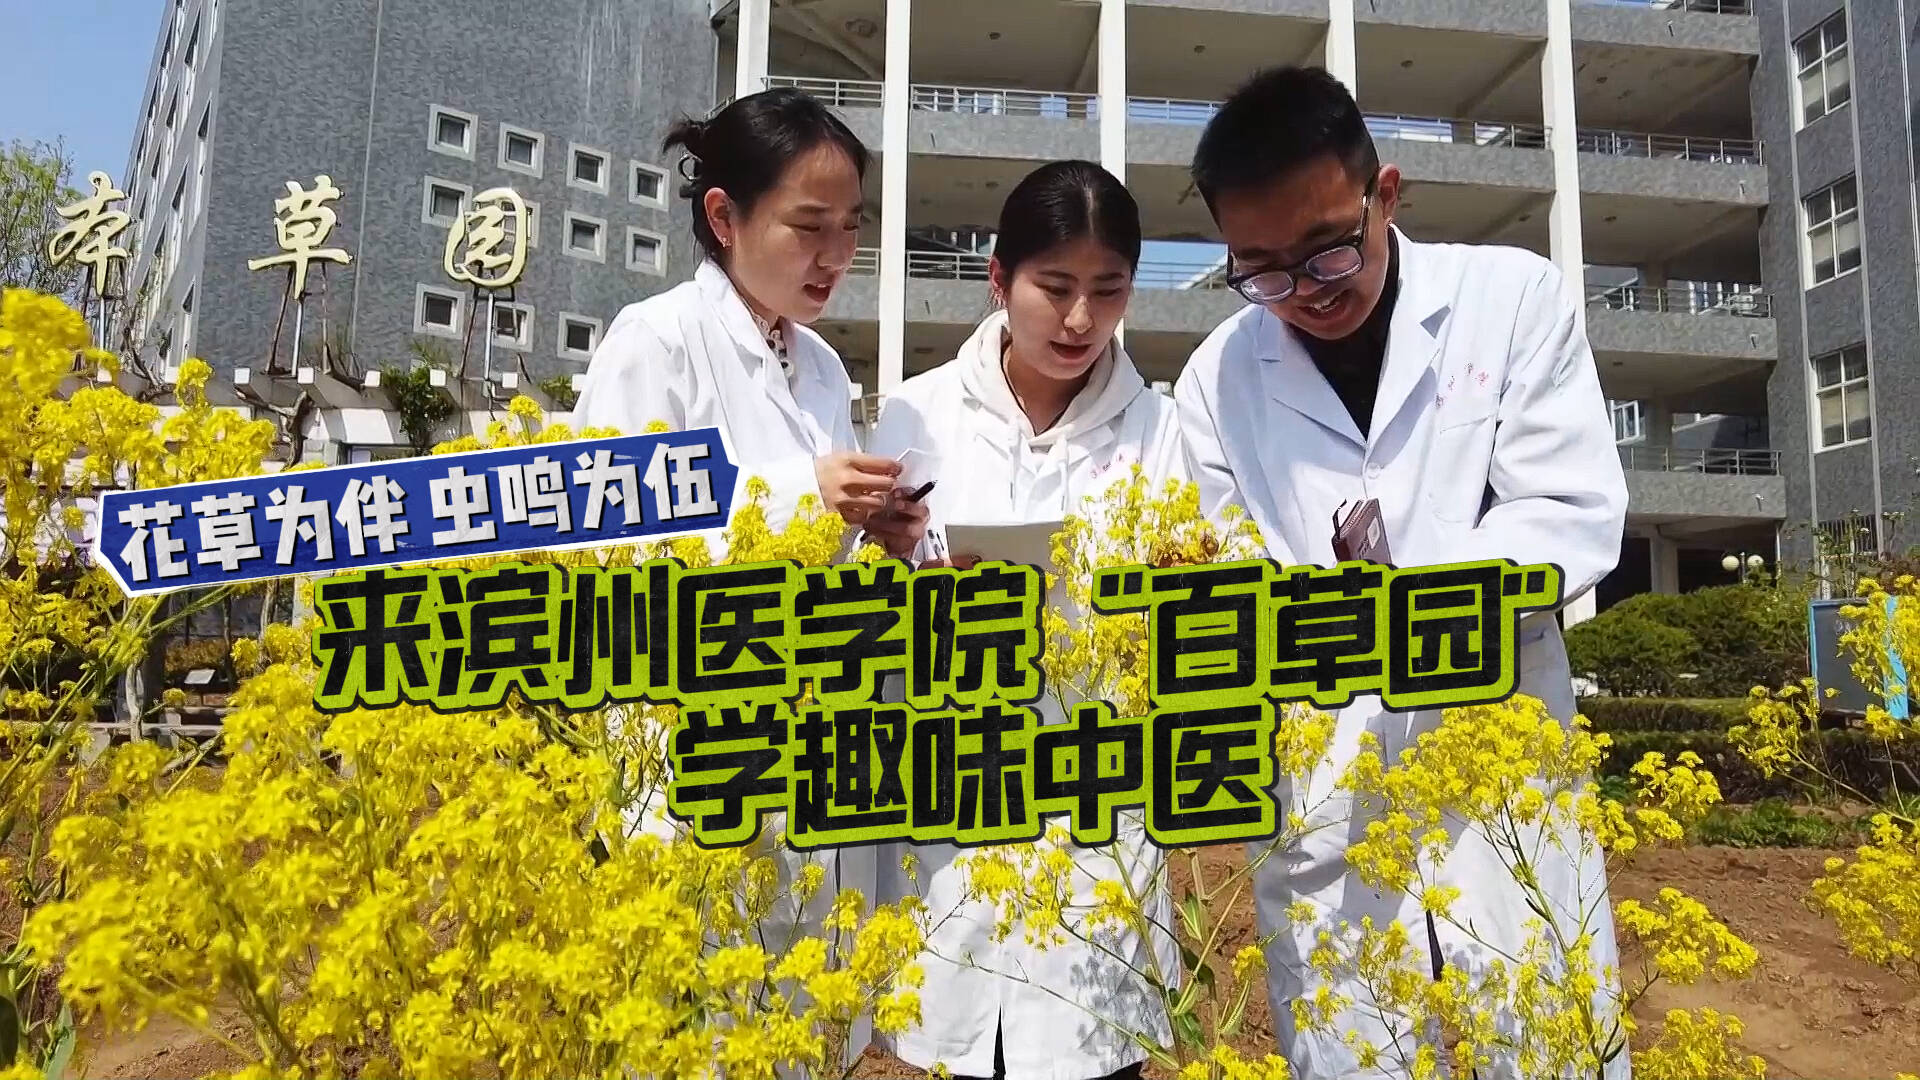 “宝藏”专业在哪里丨花草为伴虫鸣为伍 来滨州医学院“百草园”学趣味中医